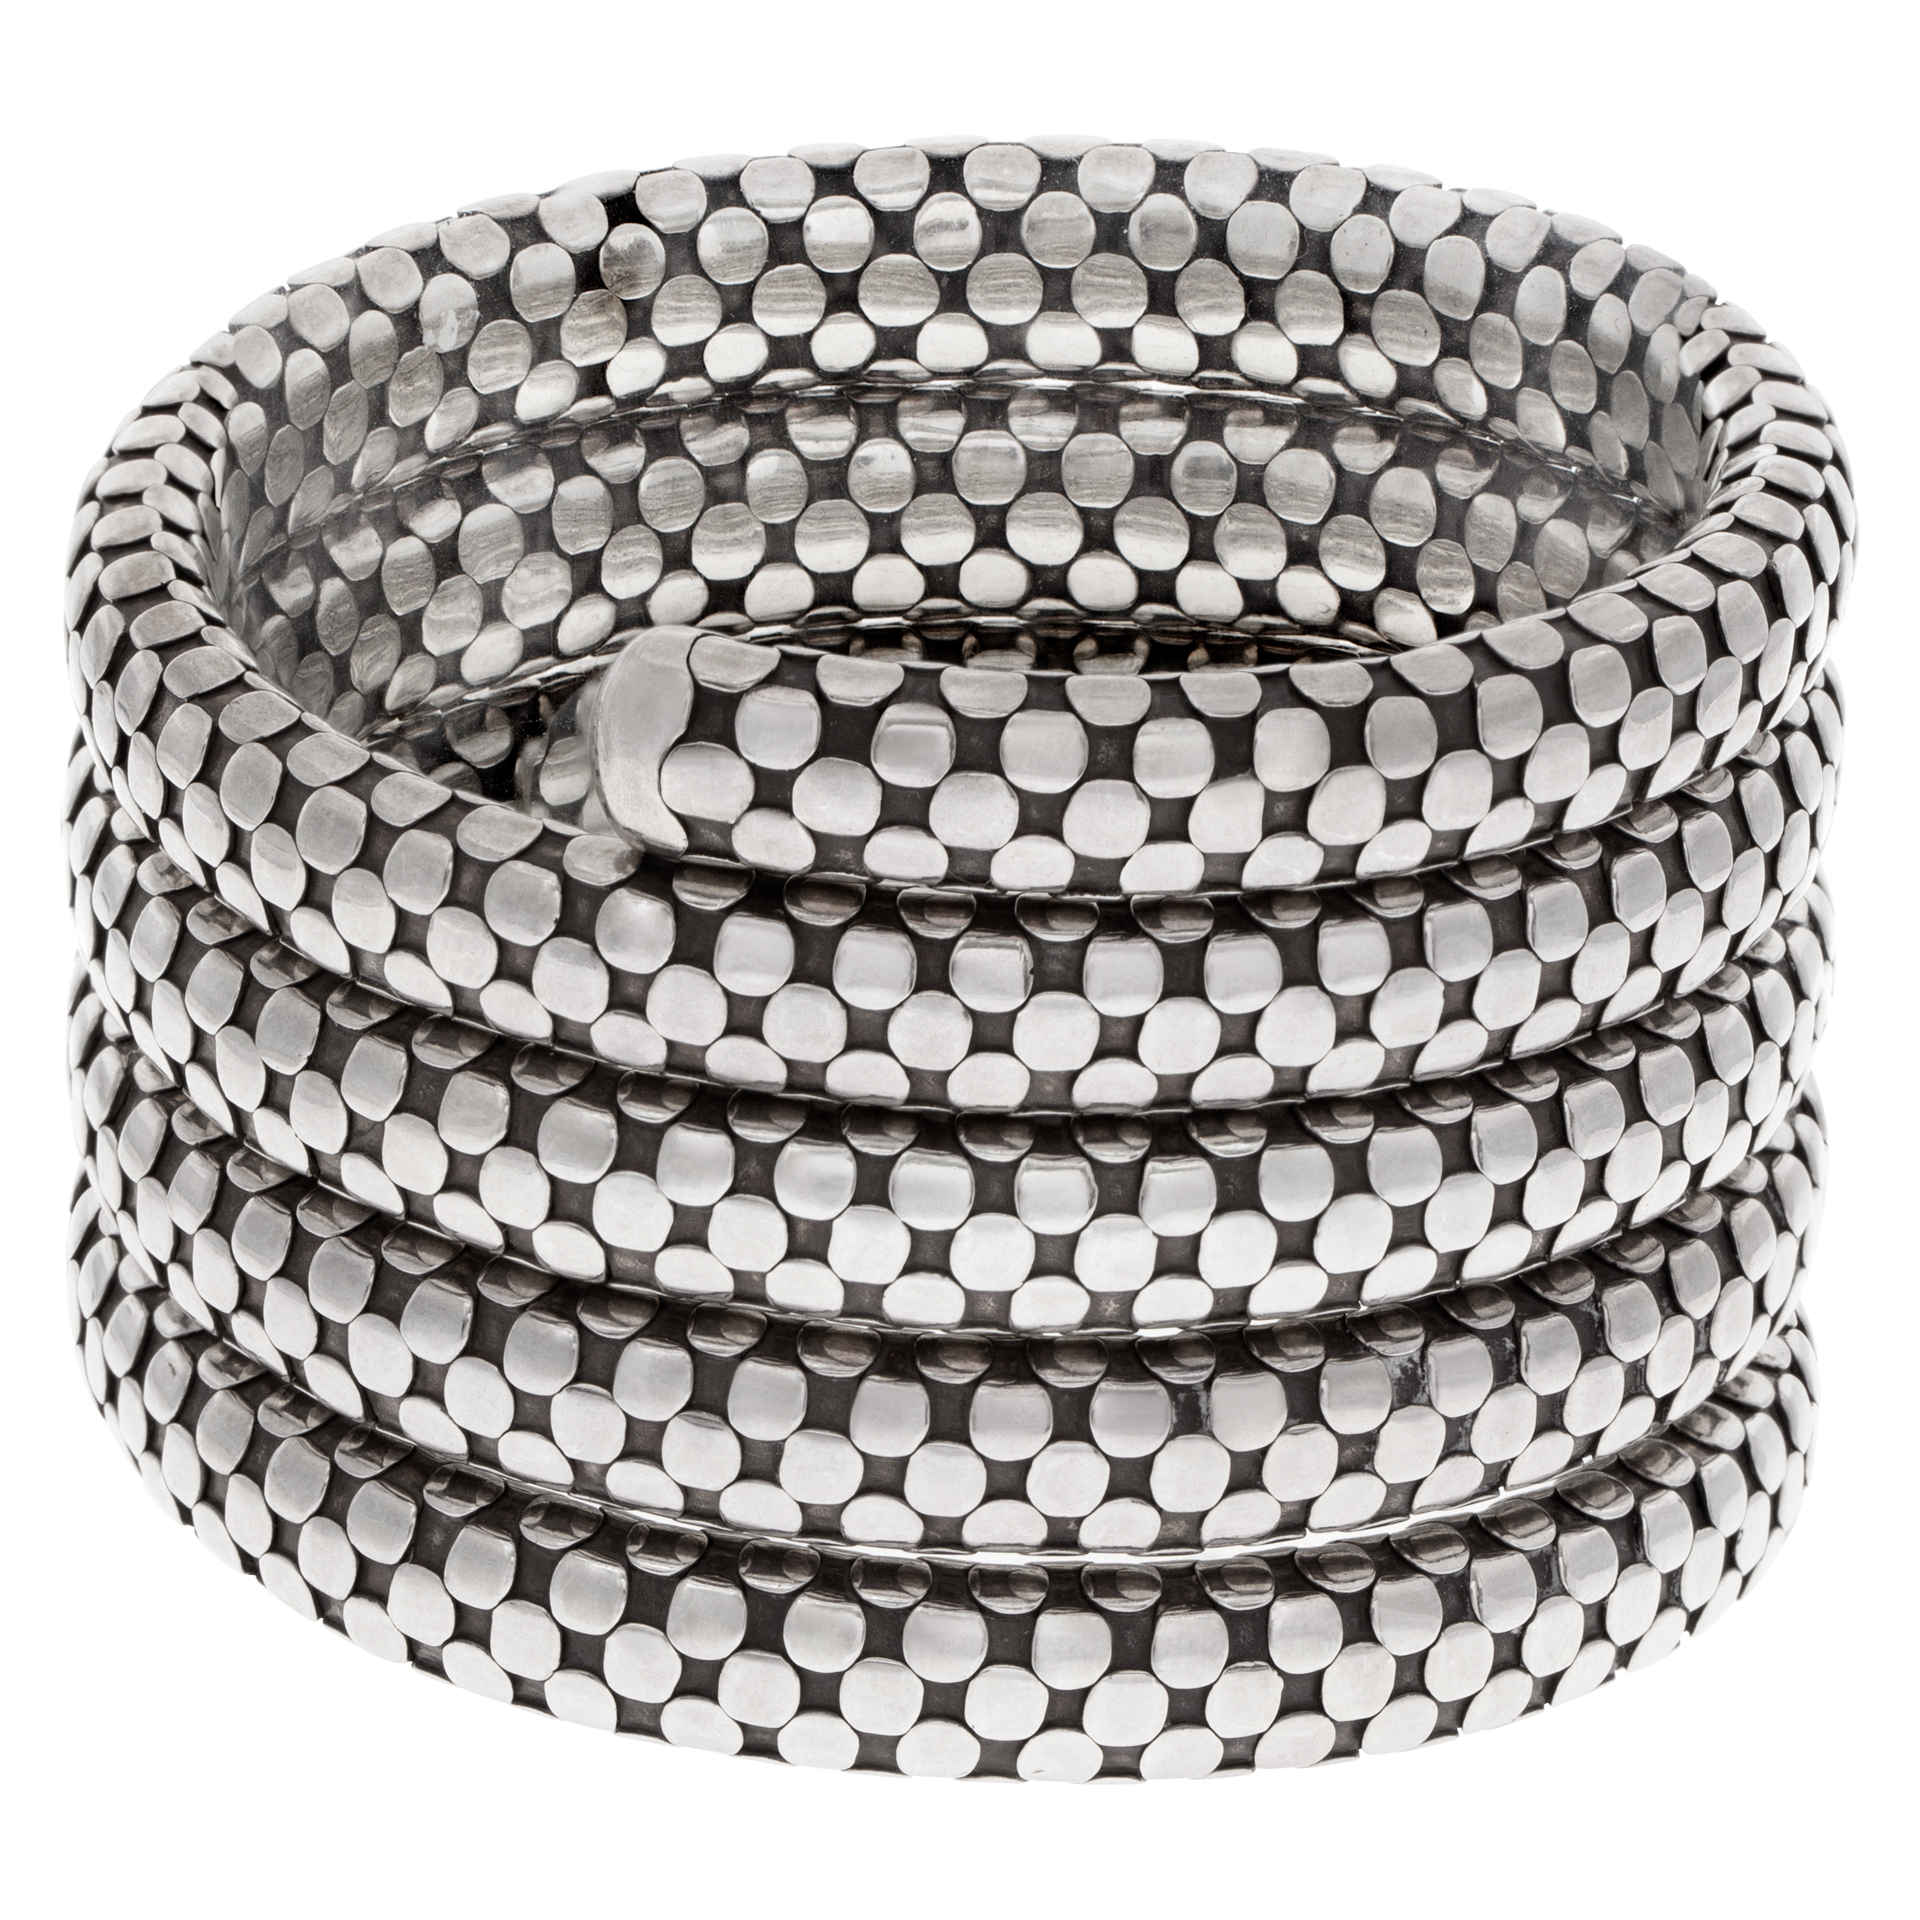 John Hardy Triple Coil dot bracelet in sterling silver